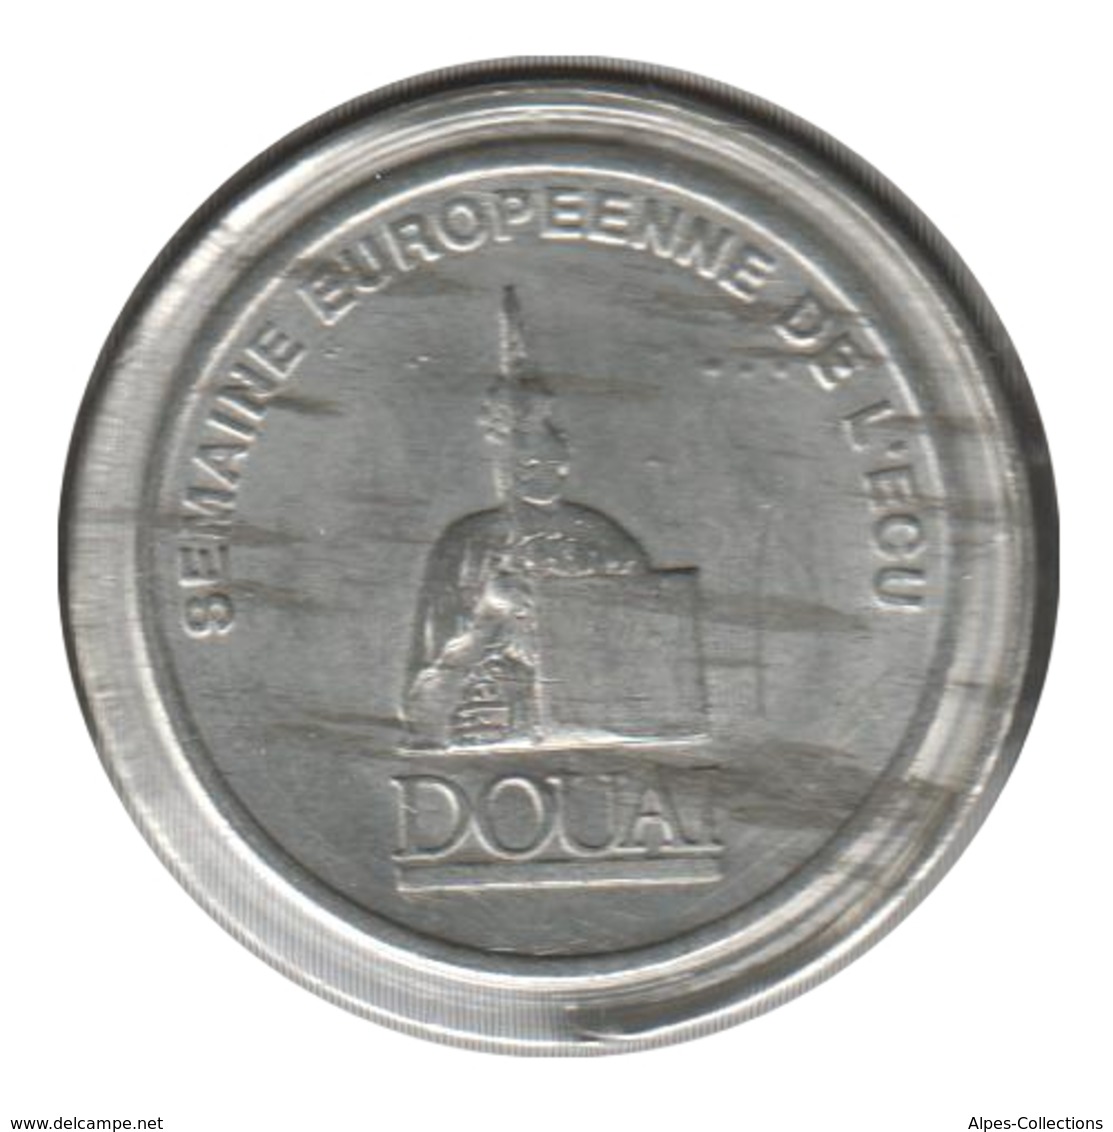 DOUAI - EC0010.3 - 1 ECU DES VILLES - Réf: NR - 1991 - Euros De Las Ciudades